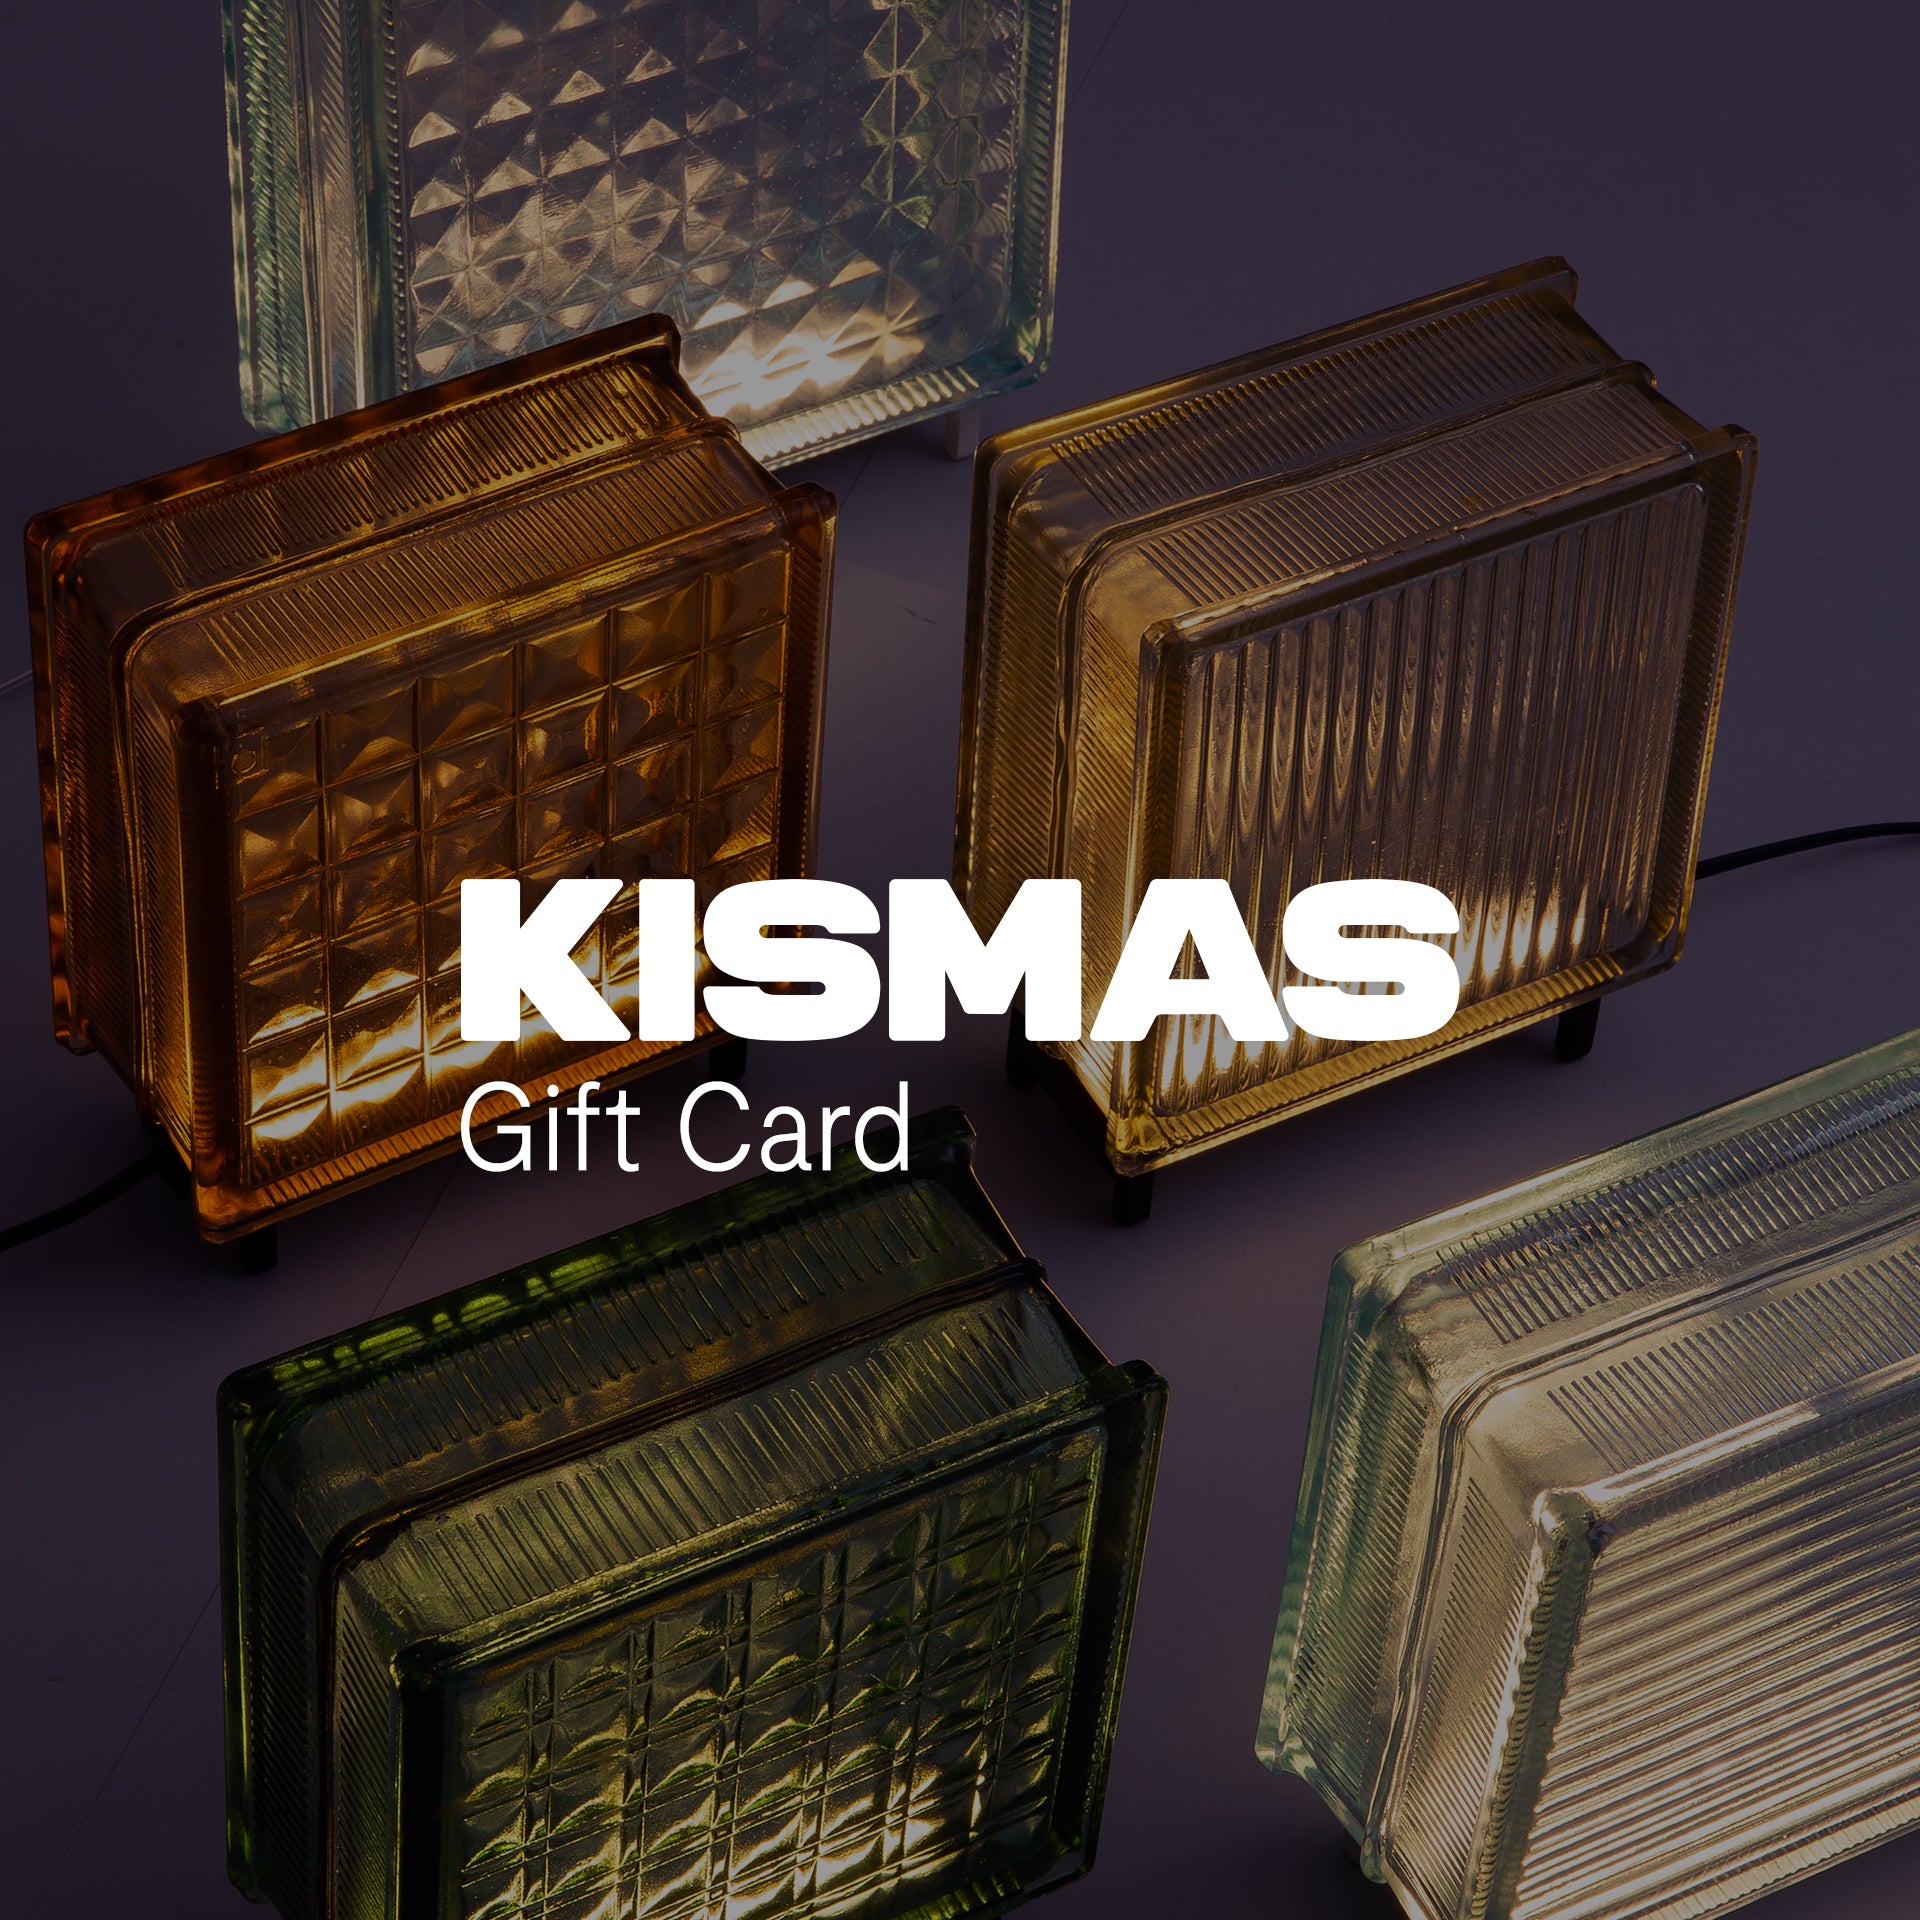 KISMAS eGift Card